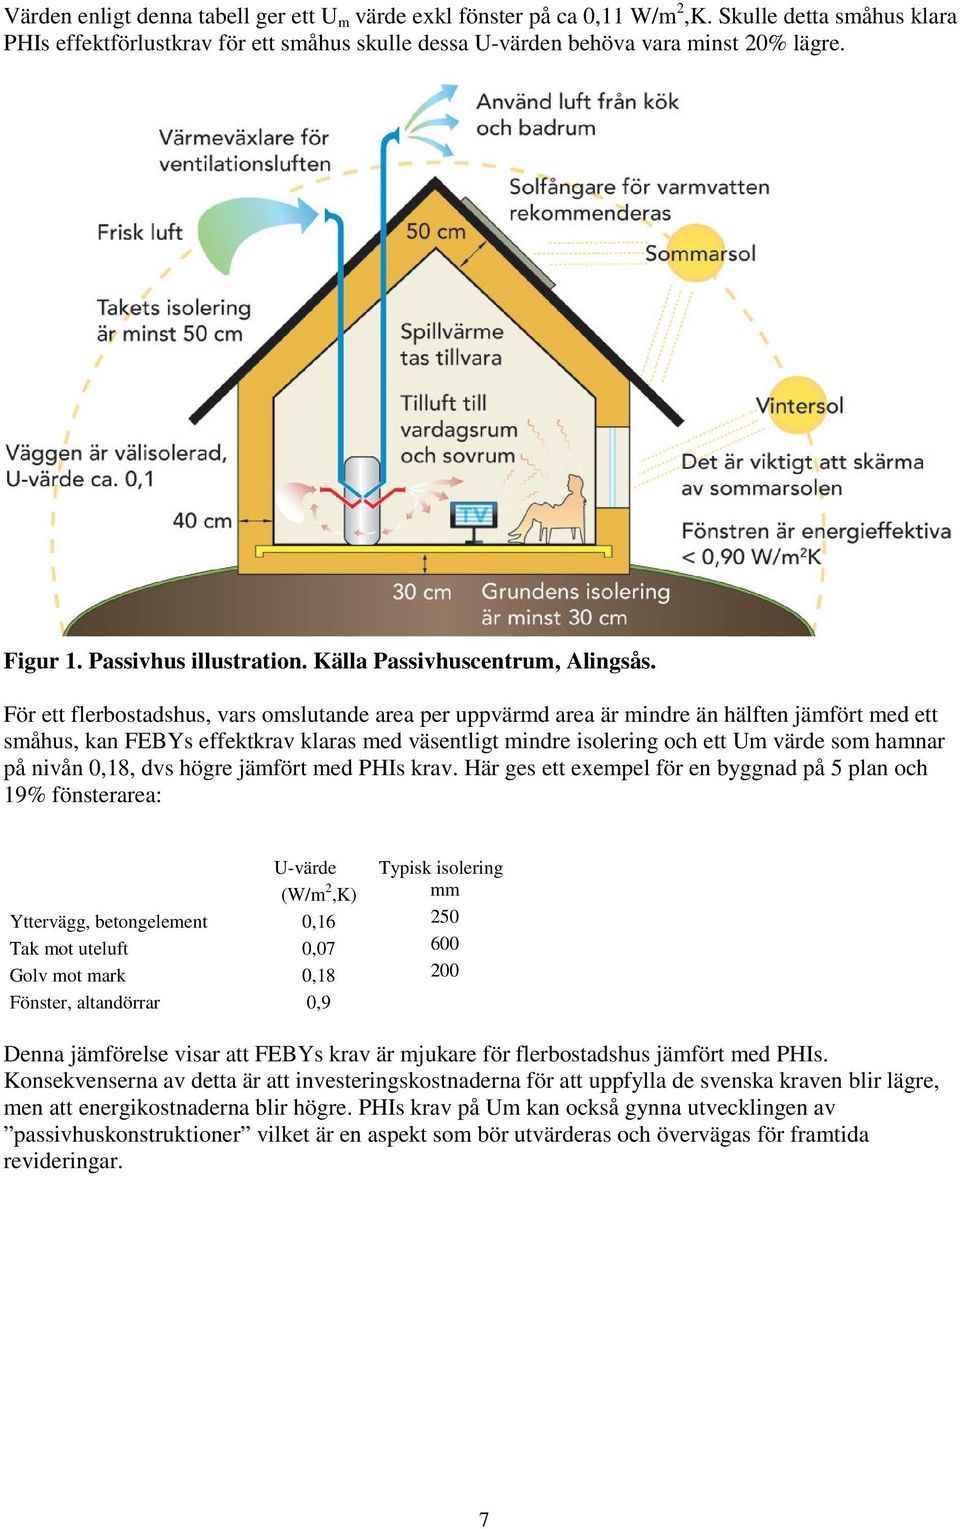 För ett flerbostadshus, vars omslutande area per uppvärmd area är mindre än hälften jämfört med ett småhus, kan FEBYs effektkrav klaras med väsentligt mindre isolering och ett Um värde som hamnar på